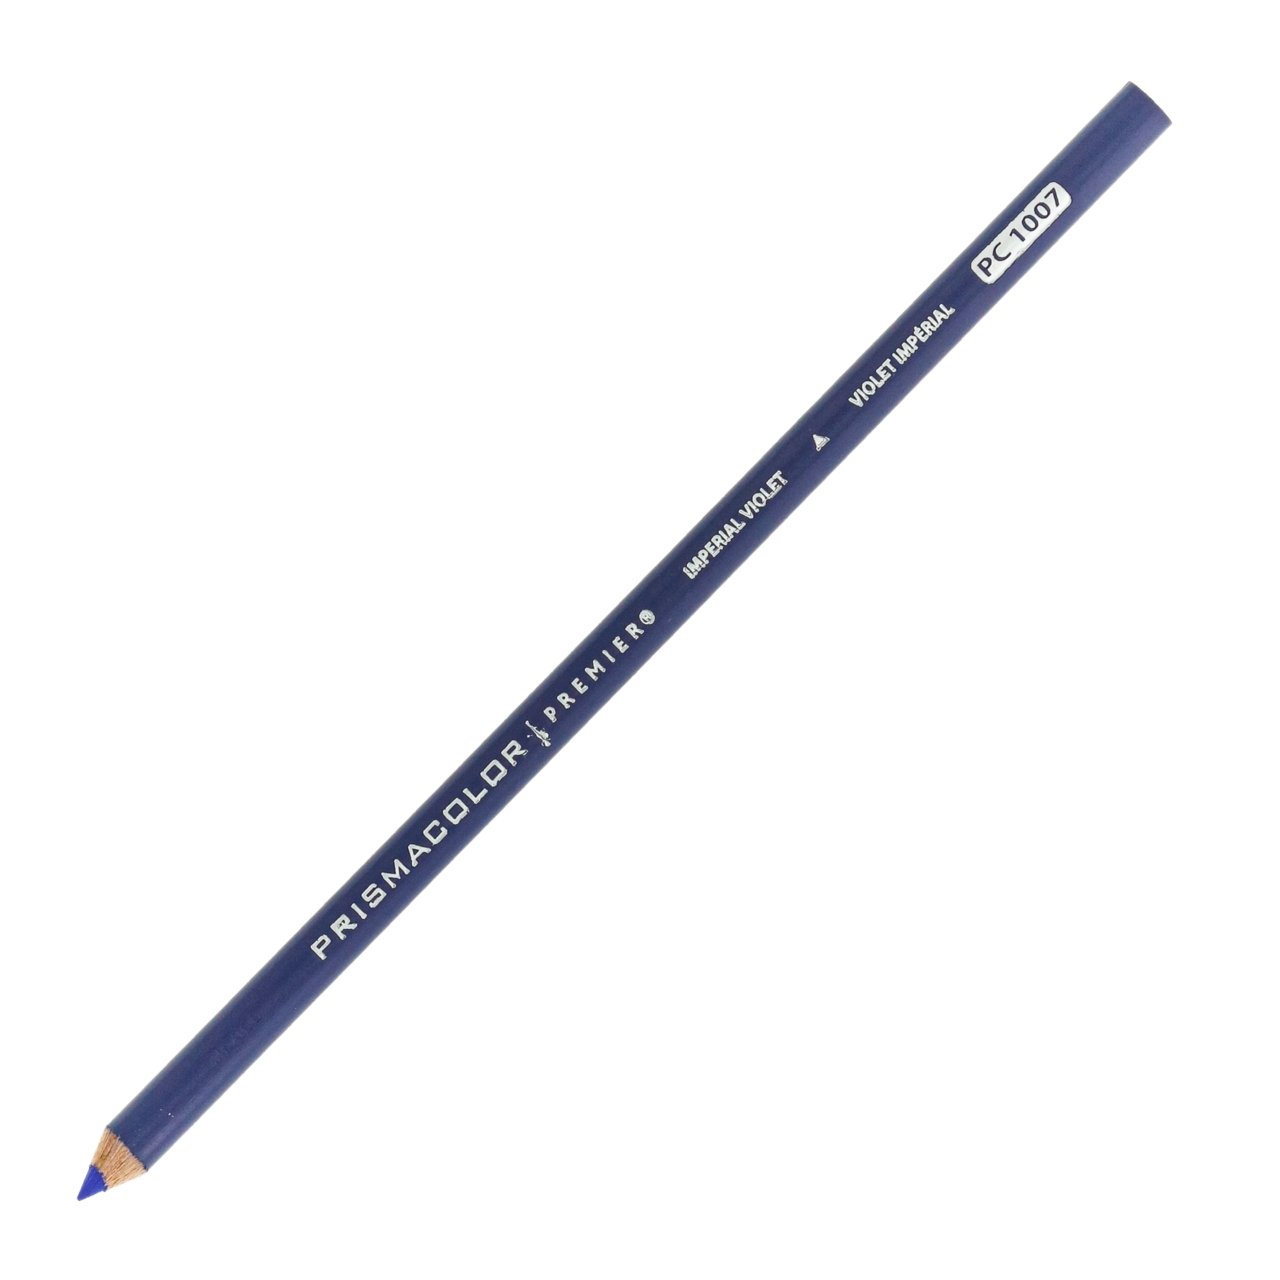 Prismacolor Premier Colored Pencil - Imperial Violet 1007 - merriartist.com